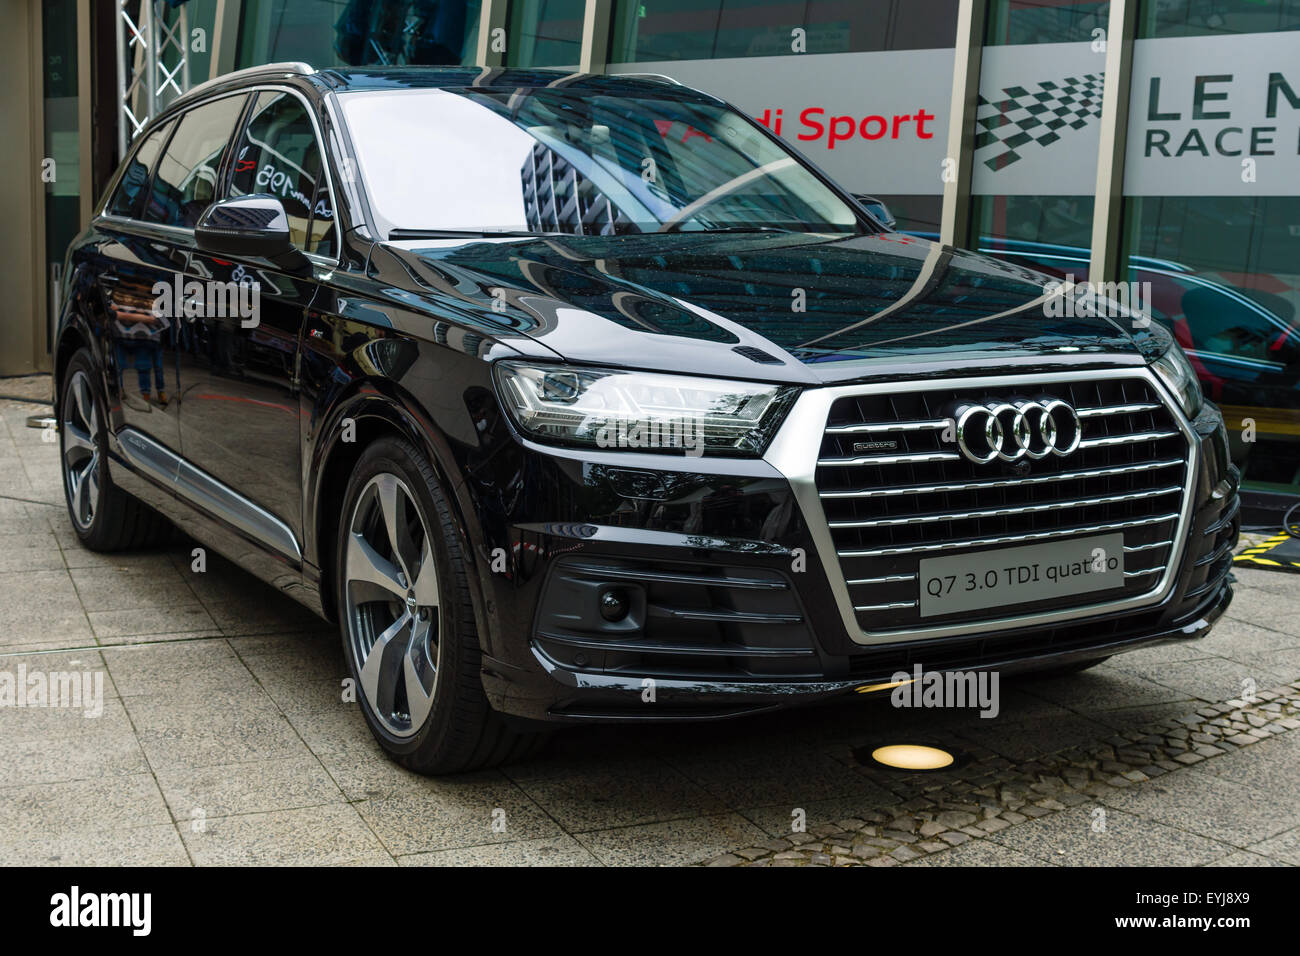 Berlino - Giugno 14, 2015: full-size lusso crossover SUV Audi Q7 3.0 TDI quattro. Il classico giorni sul Kurfuerstendamm. Foto Stock